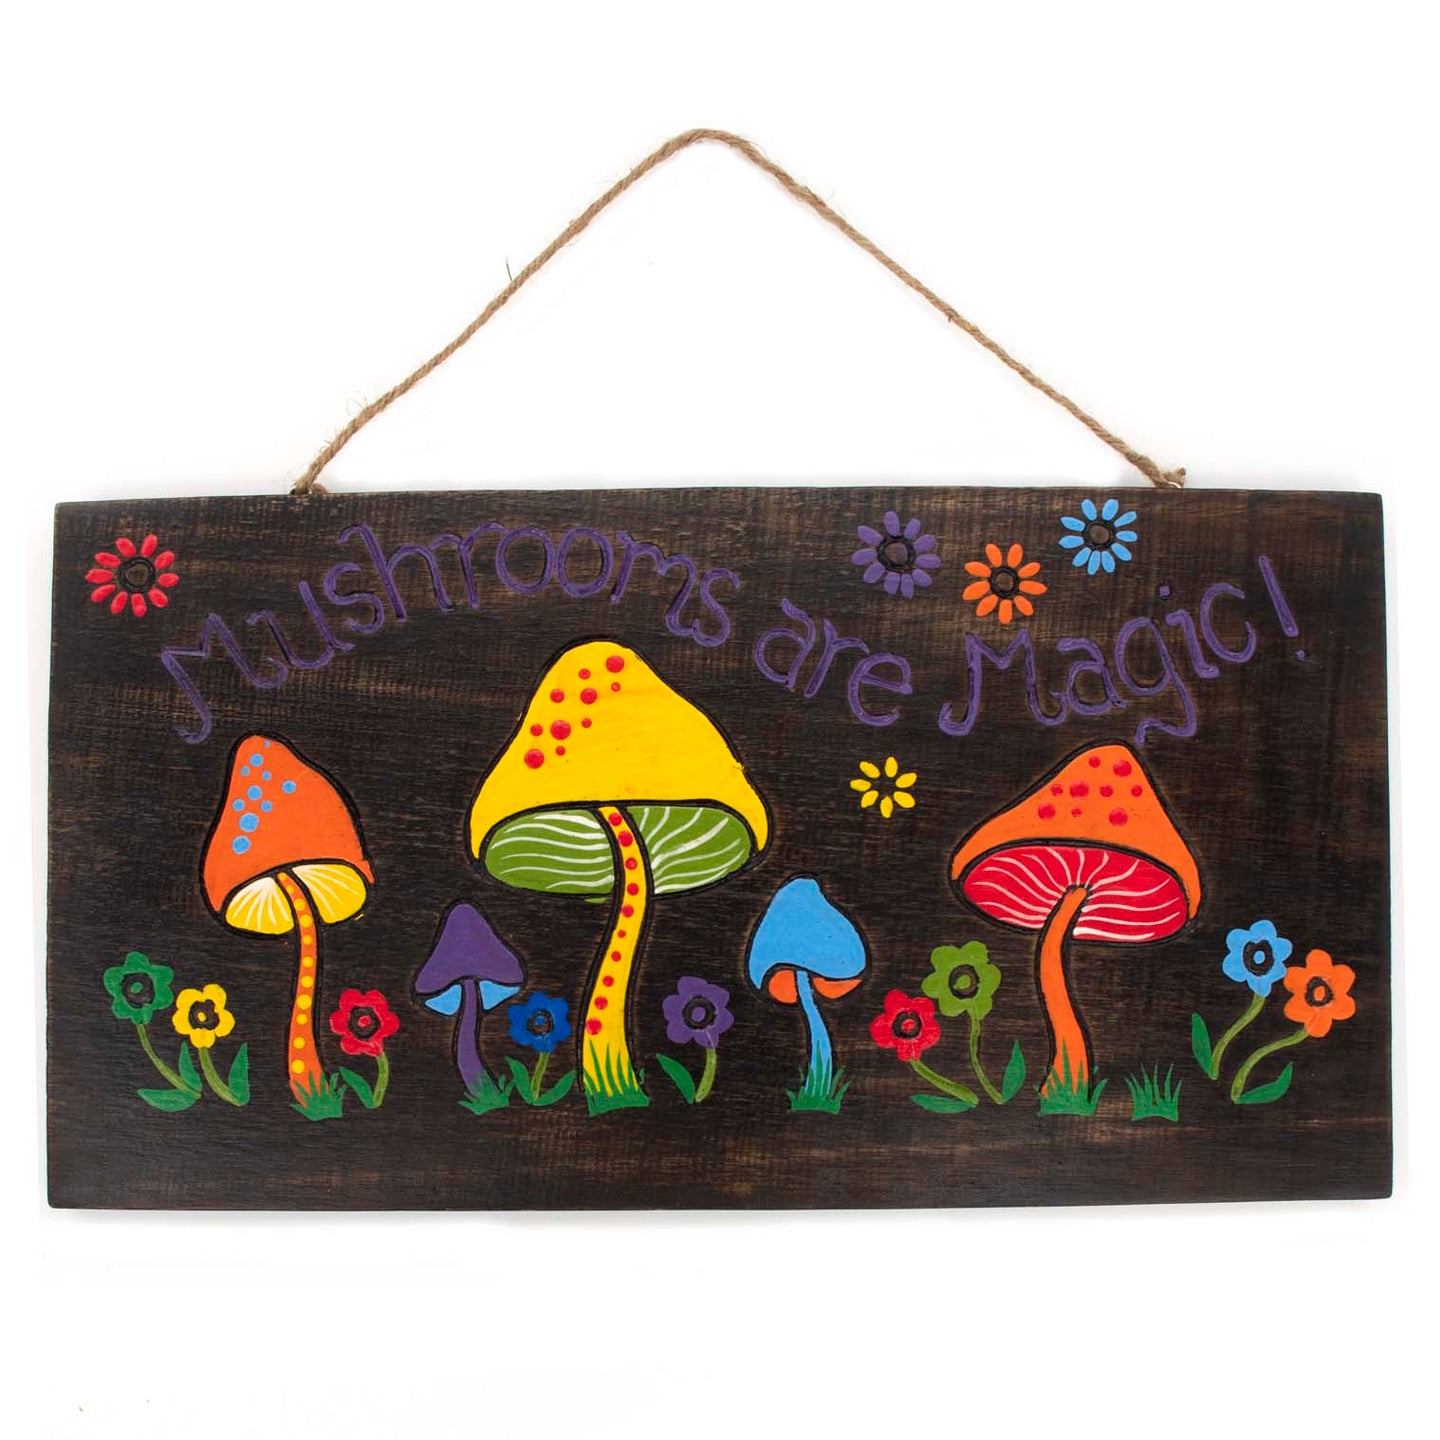 Mushrooms Are Magic Wooden Plaque